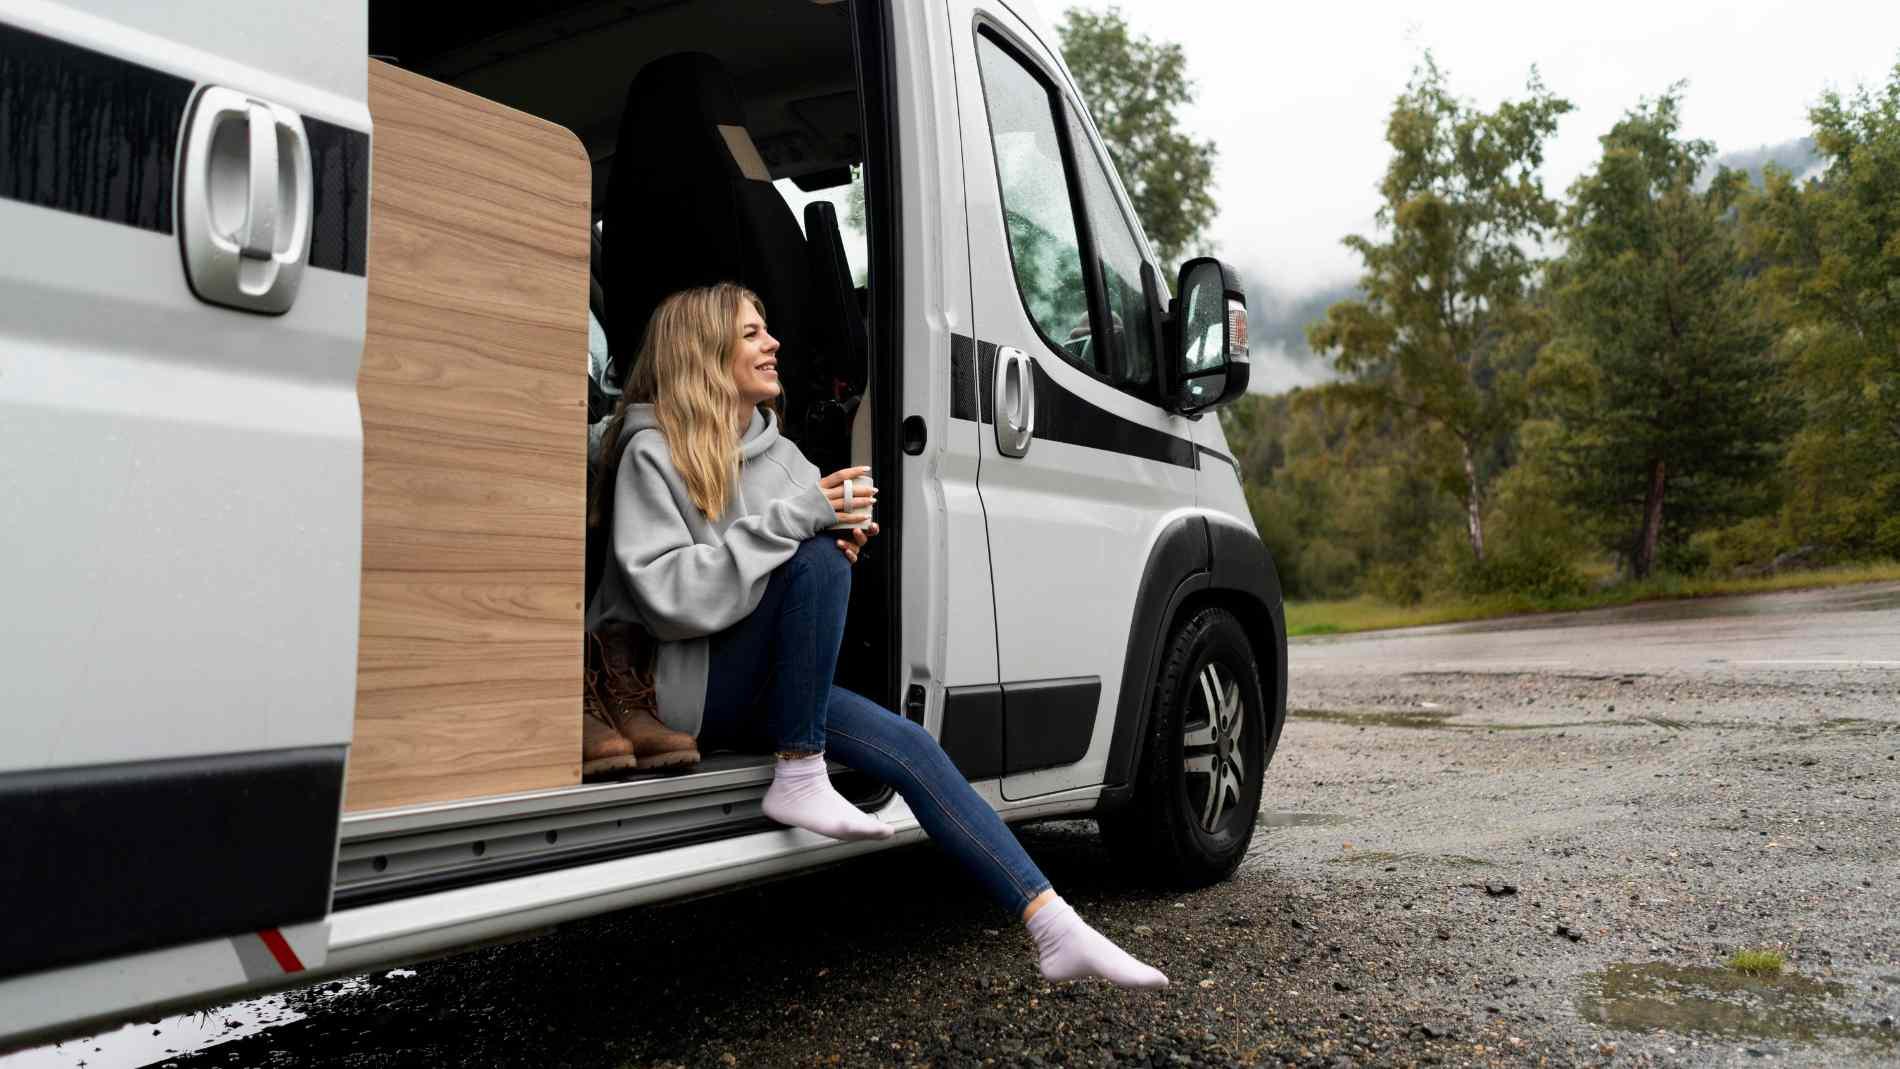 Equipamientos furgonetas Camper - Accesorios, camas y muebles para